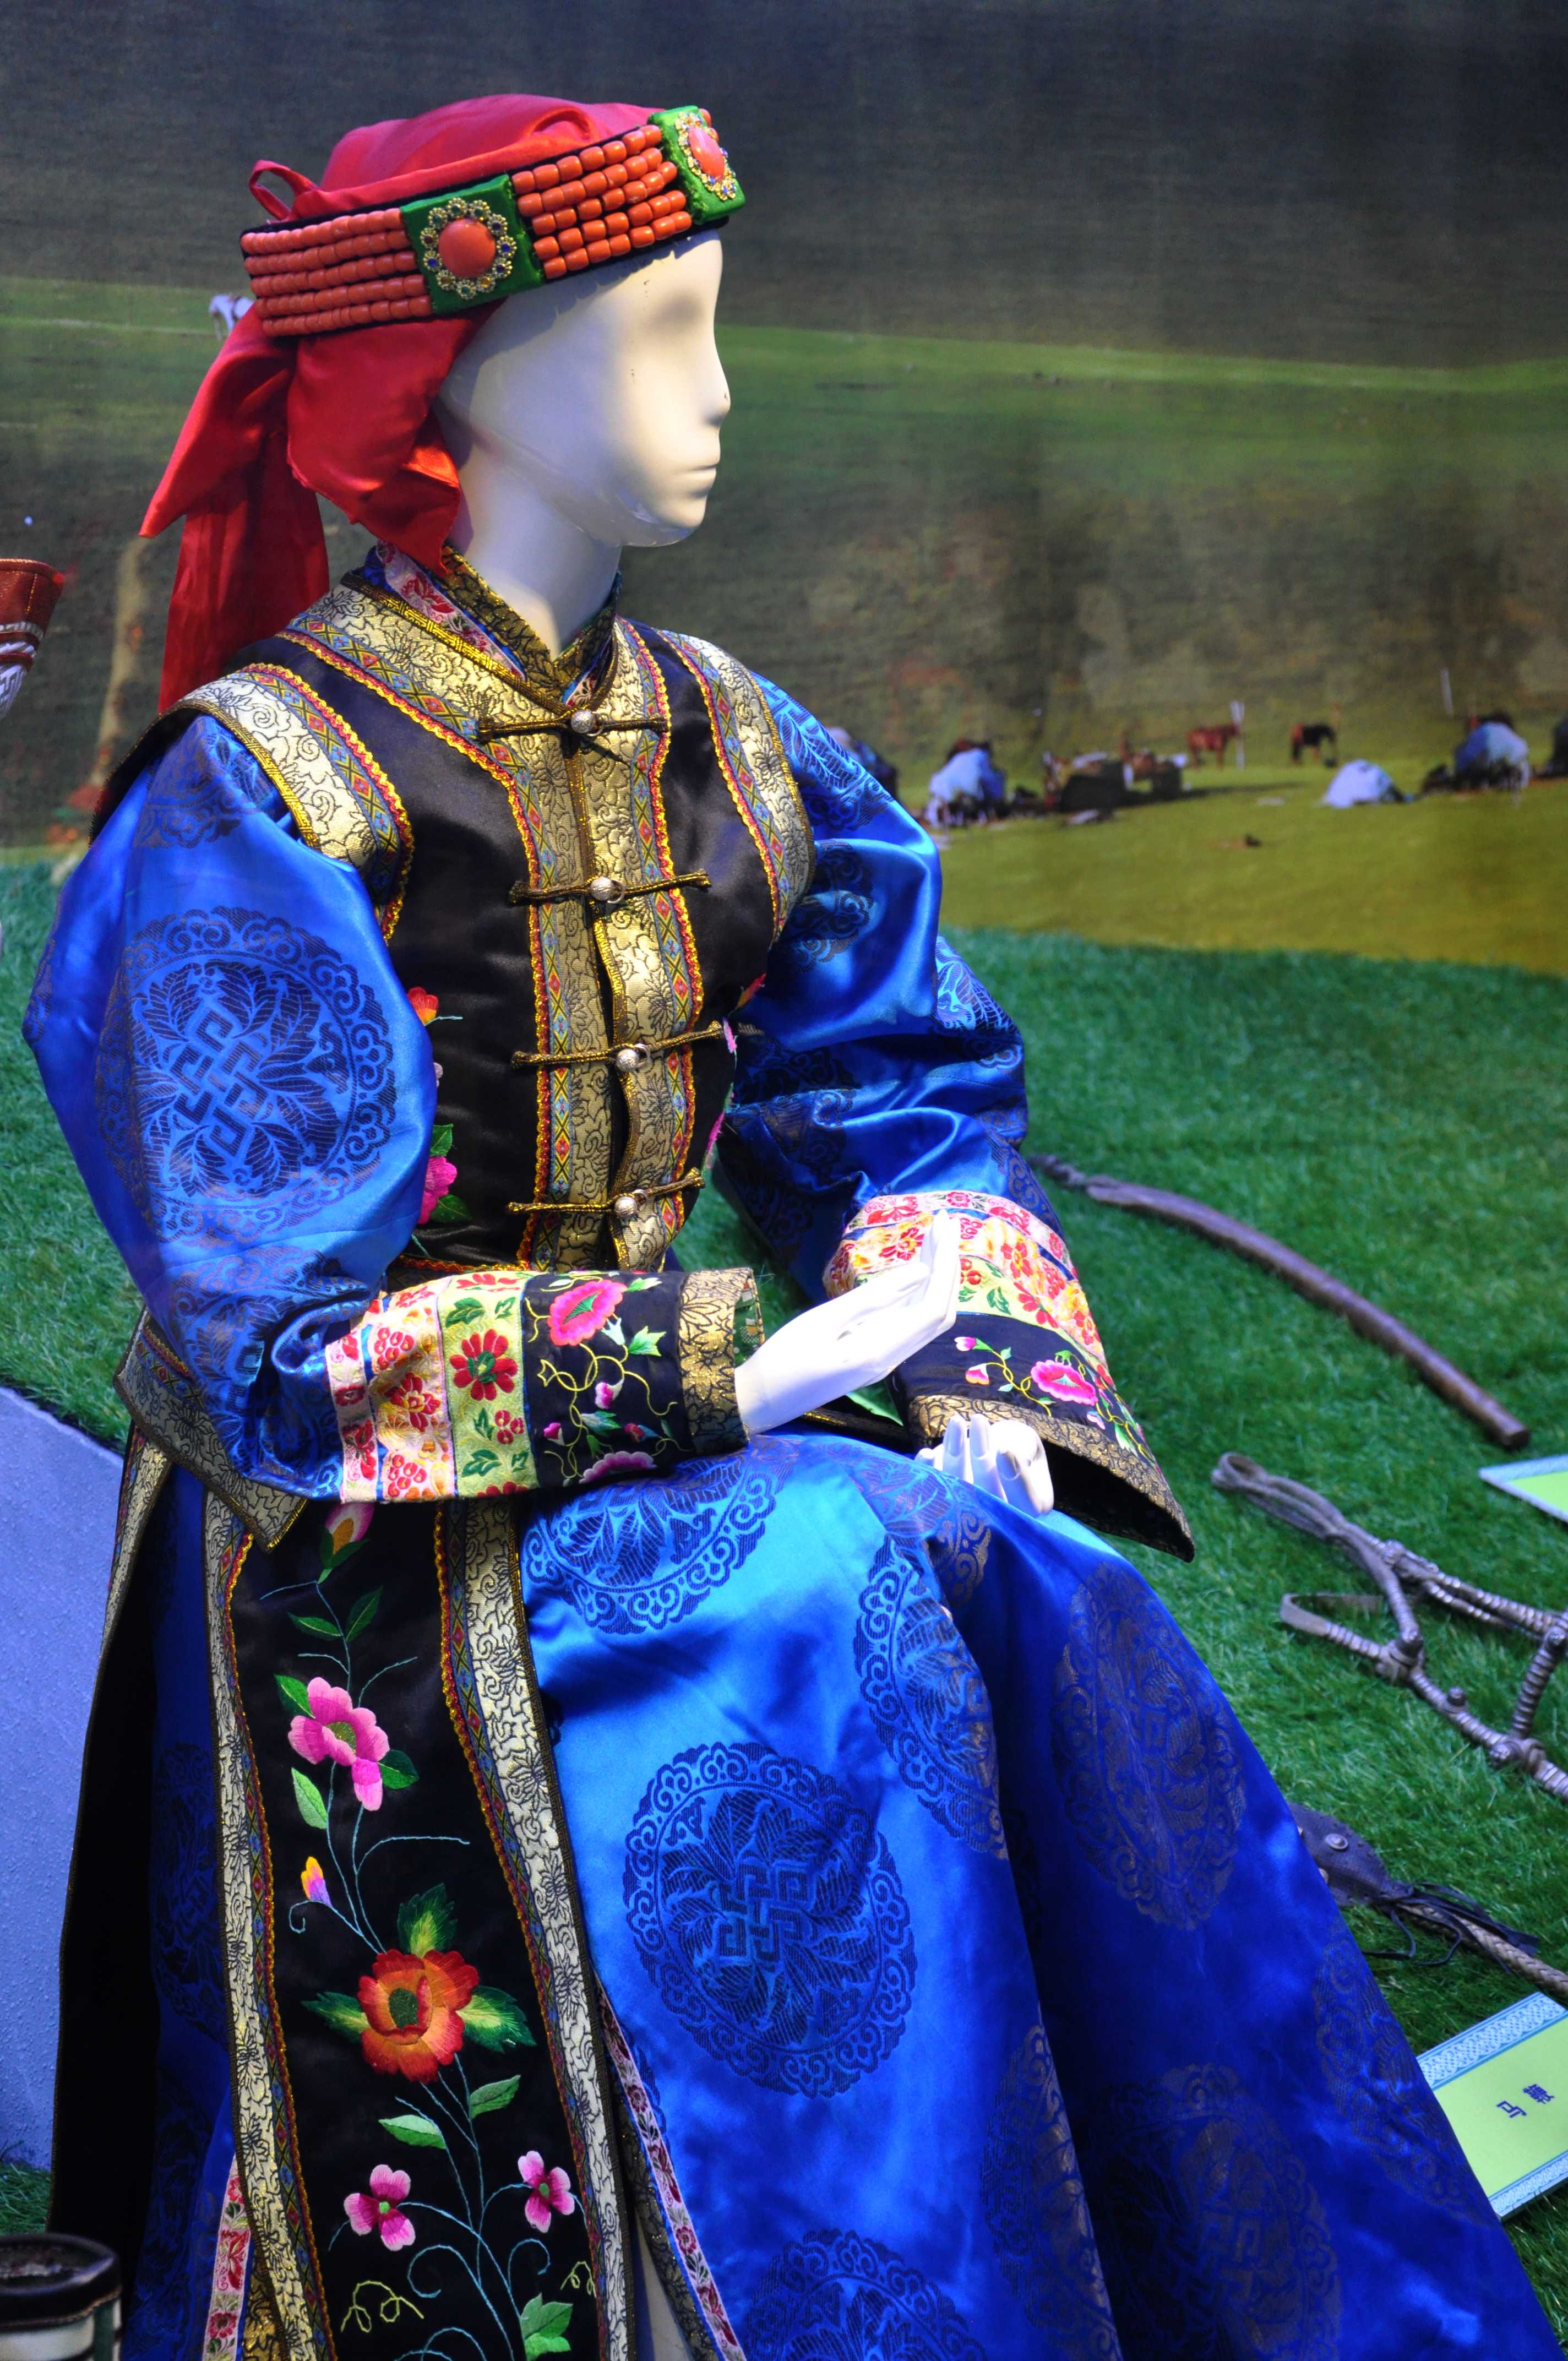 穿着蒙古族服饰的女人人像图片免费下载_jpg格式_3456像素_编号40020669-千图网